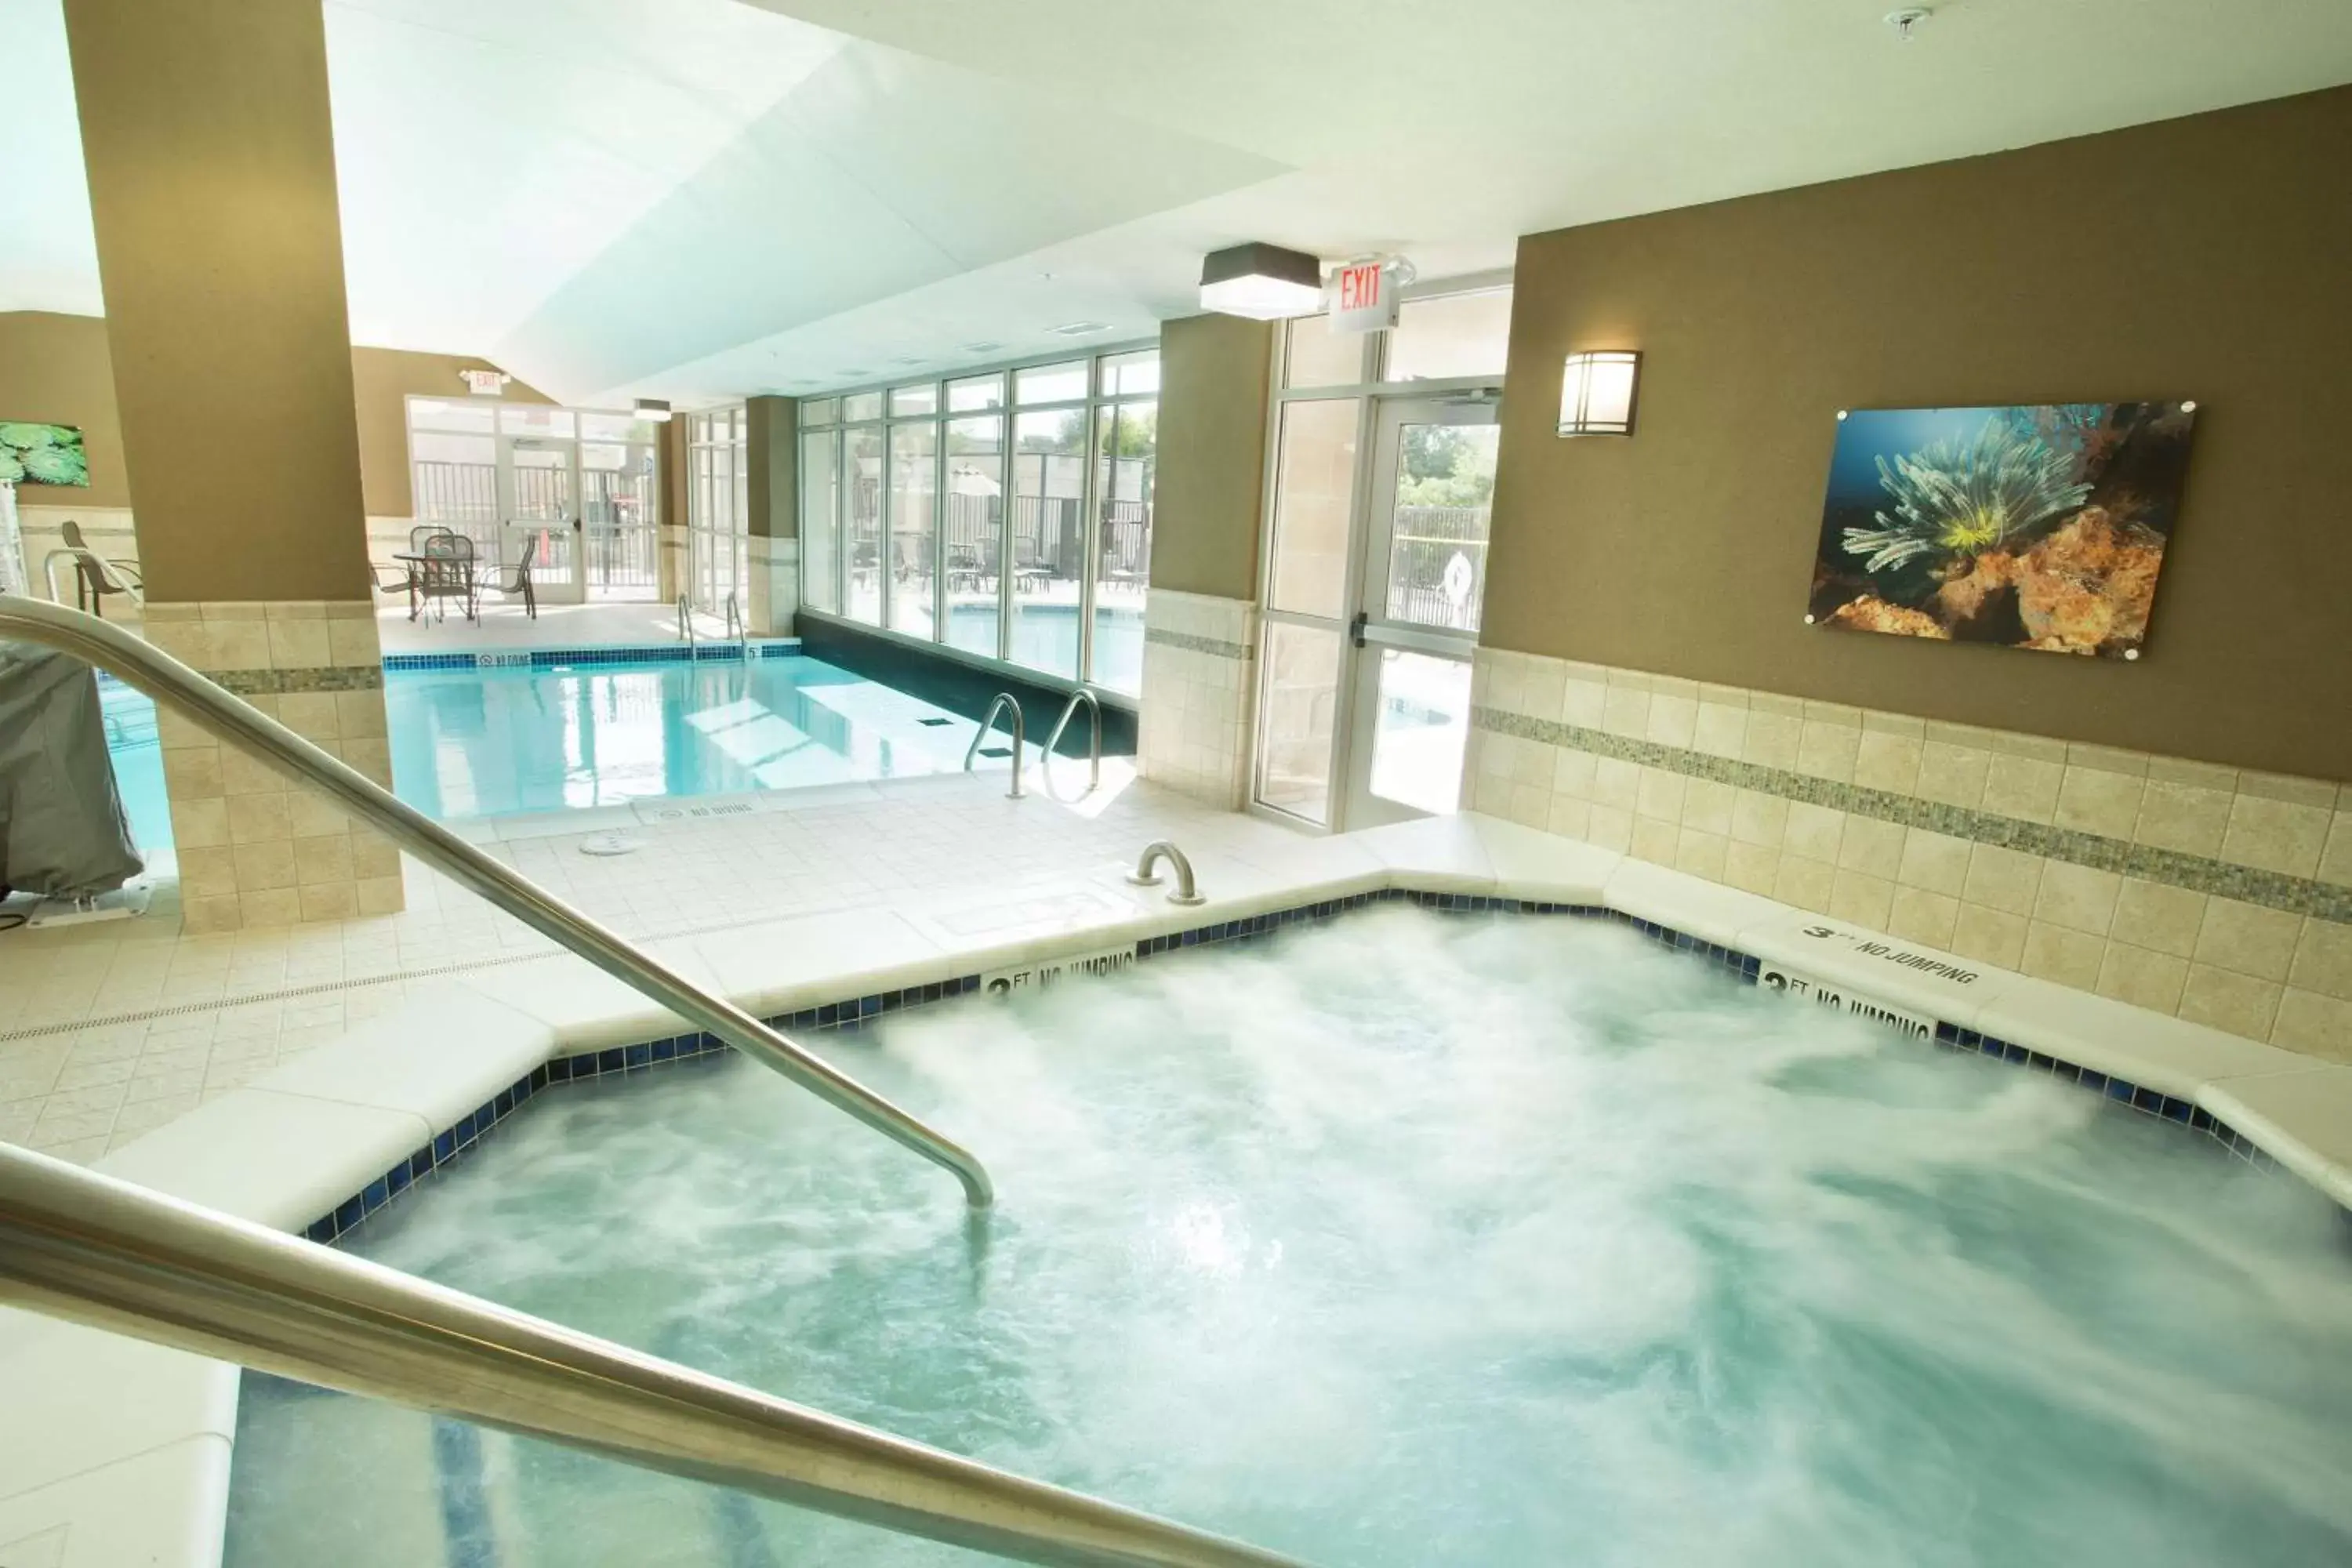 Activities, Swimming Pool in Drury Inn & Suites St. Louis Brentwood